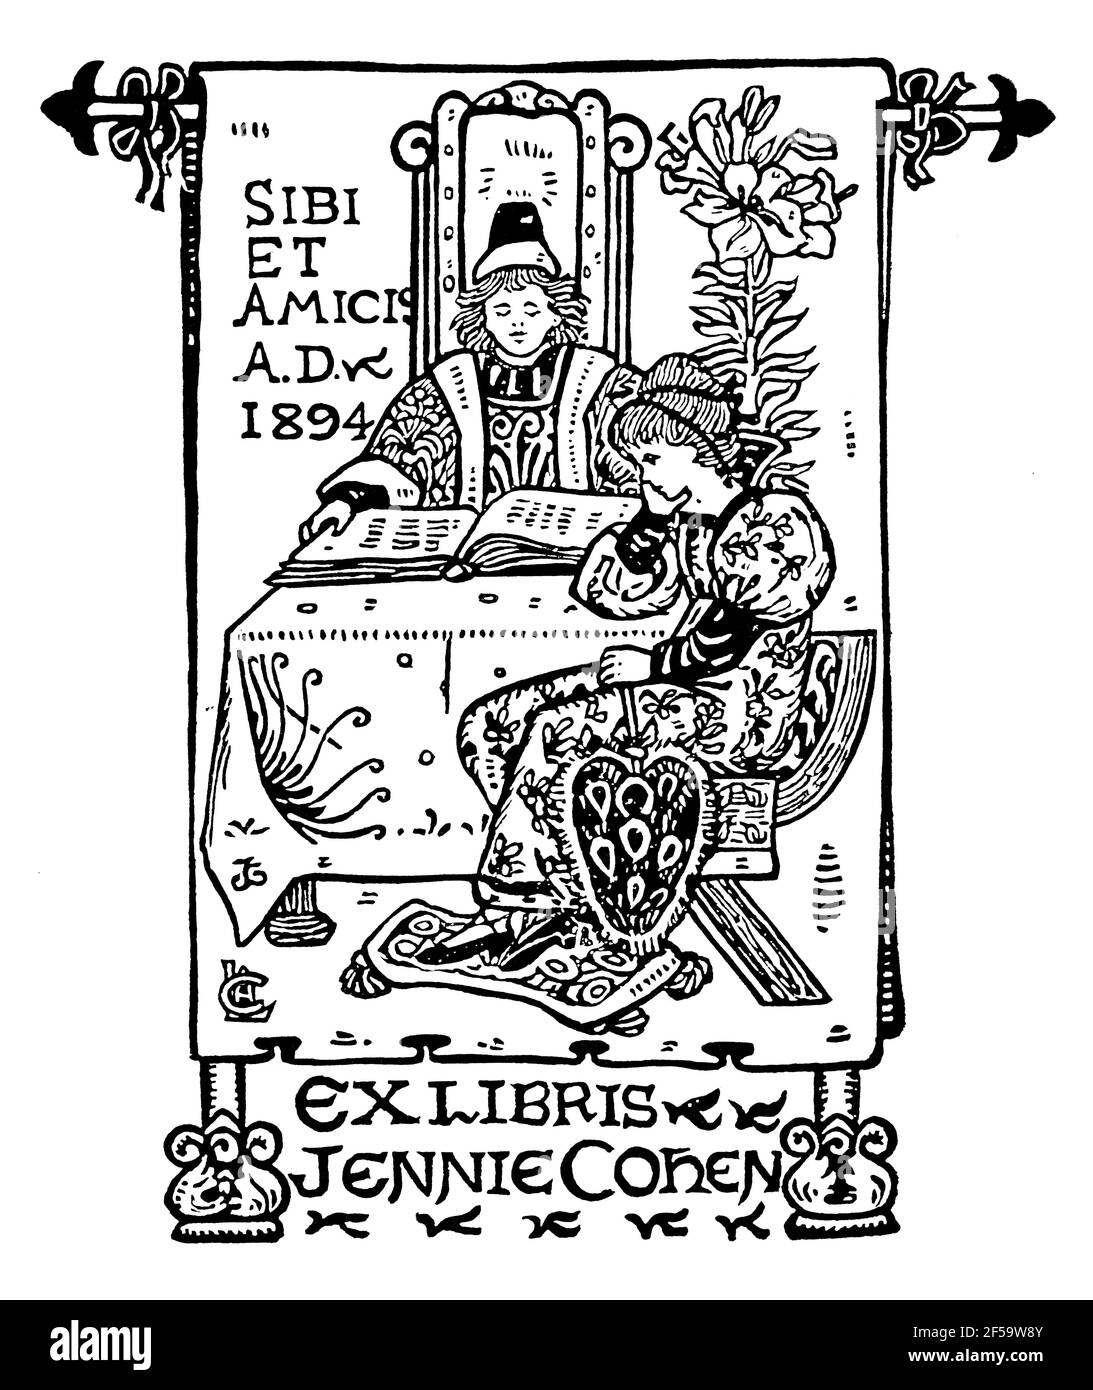 1994 devise latine, Sibi et Amicis (pour eux et leurs amis) homme et femme dans la bibliothèque de costume médiéval pour Jennie Cohen par Celia Levetus Banque D'Images